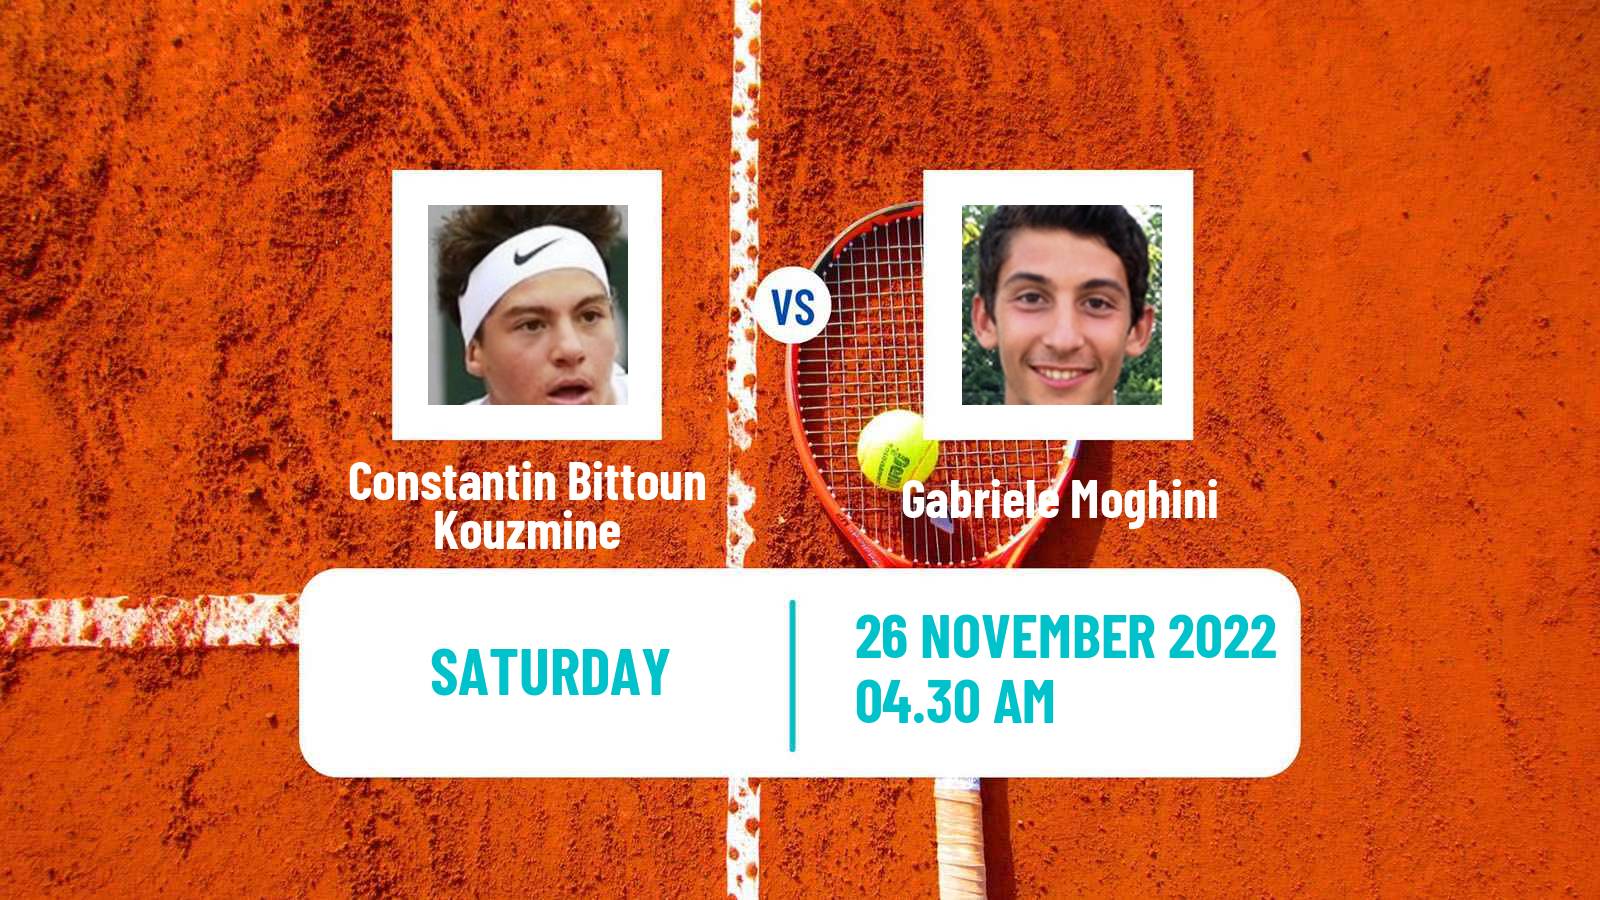 Tennis ITF Tournaments Constantin Bittoun Kouzmine - Gabriele Moghini